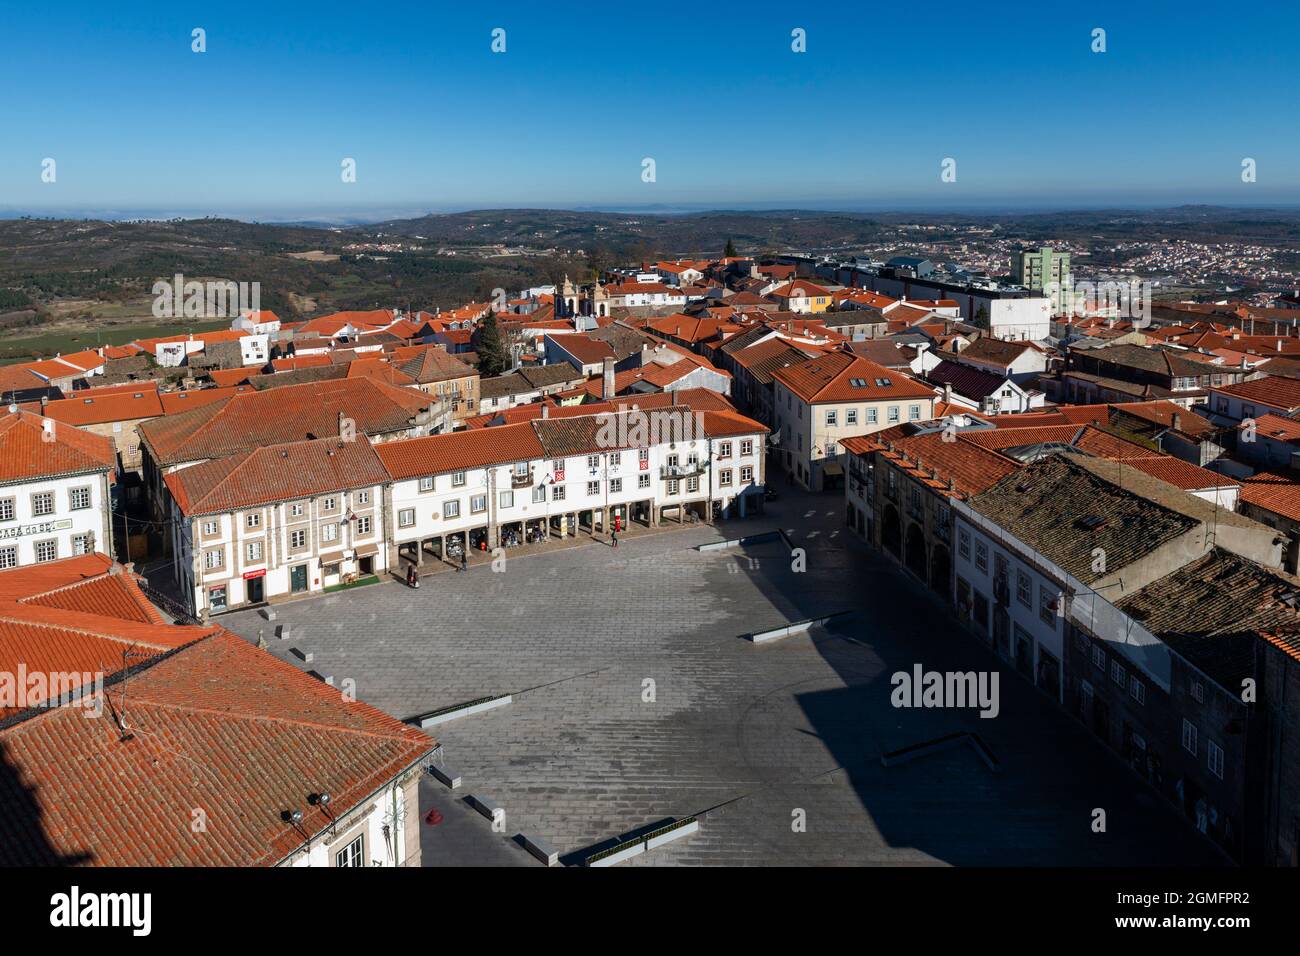 Guarda, Portugal - 28 de noviembre de 2015: Vista de la Plaza Luis de Camoes (también kown como Praca Velha) en el centro histórico de la ciudad de Guarda, Portu Foto de stock